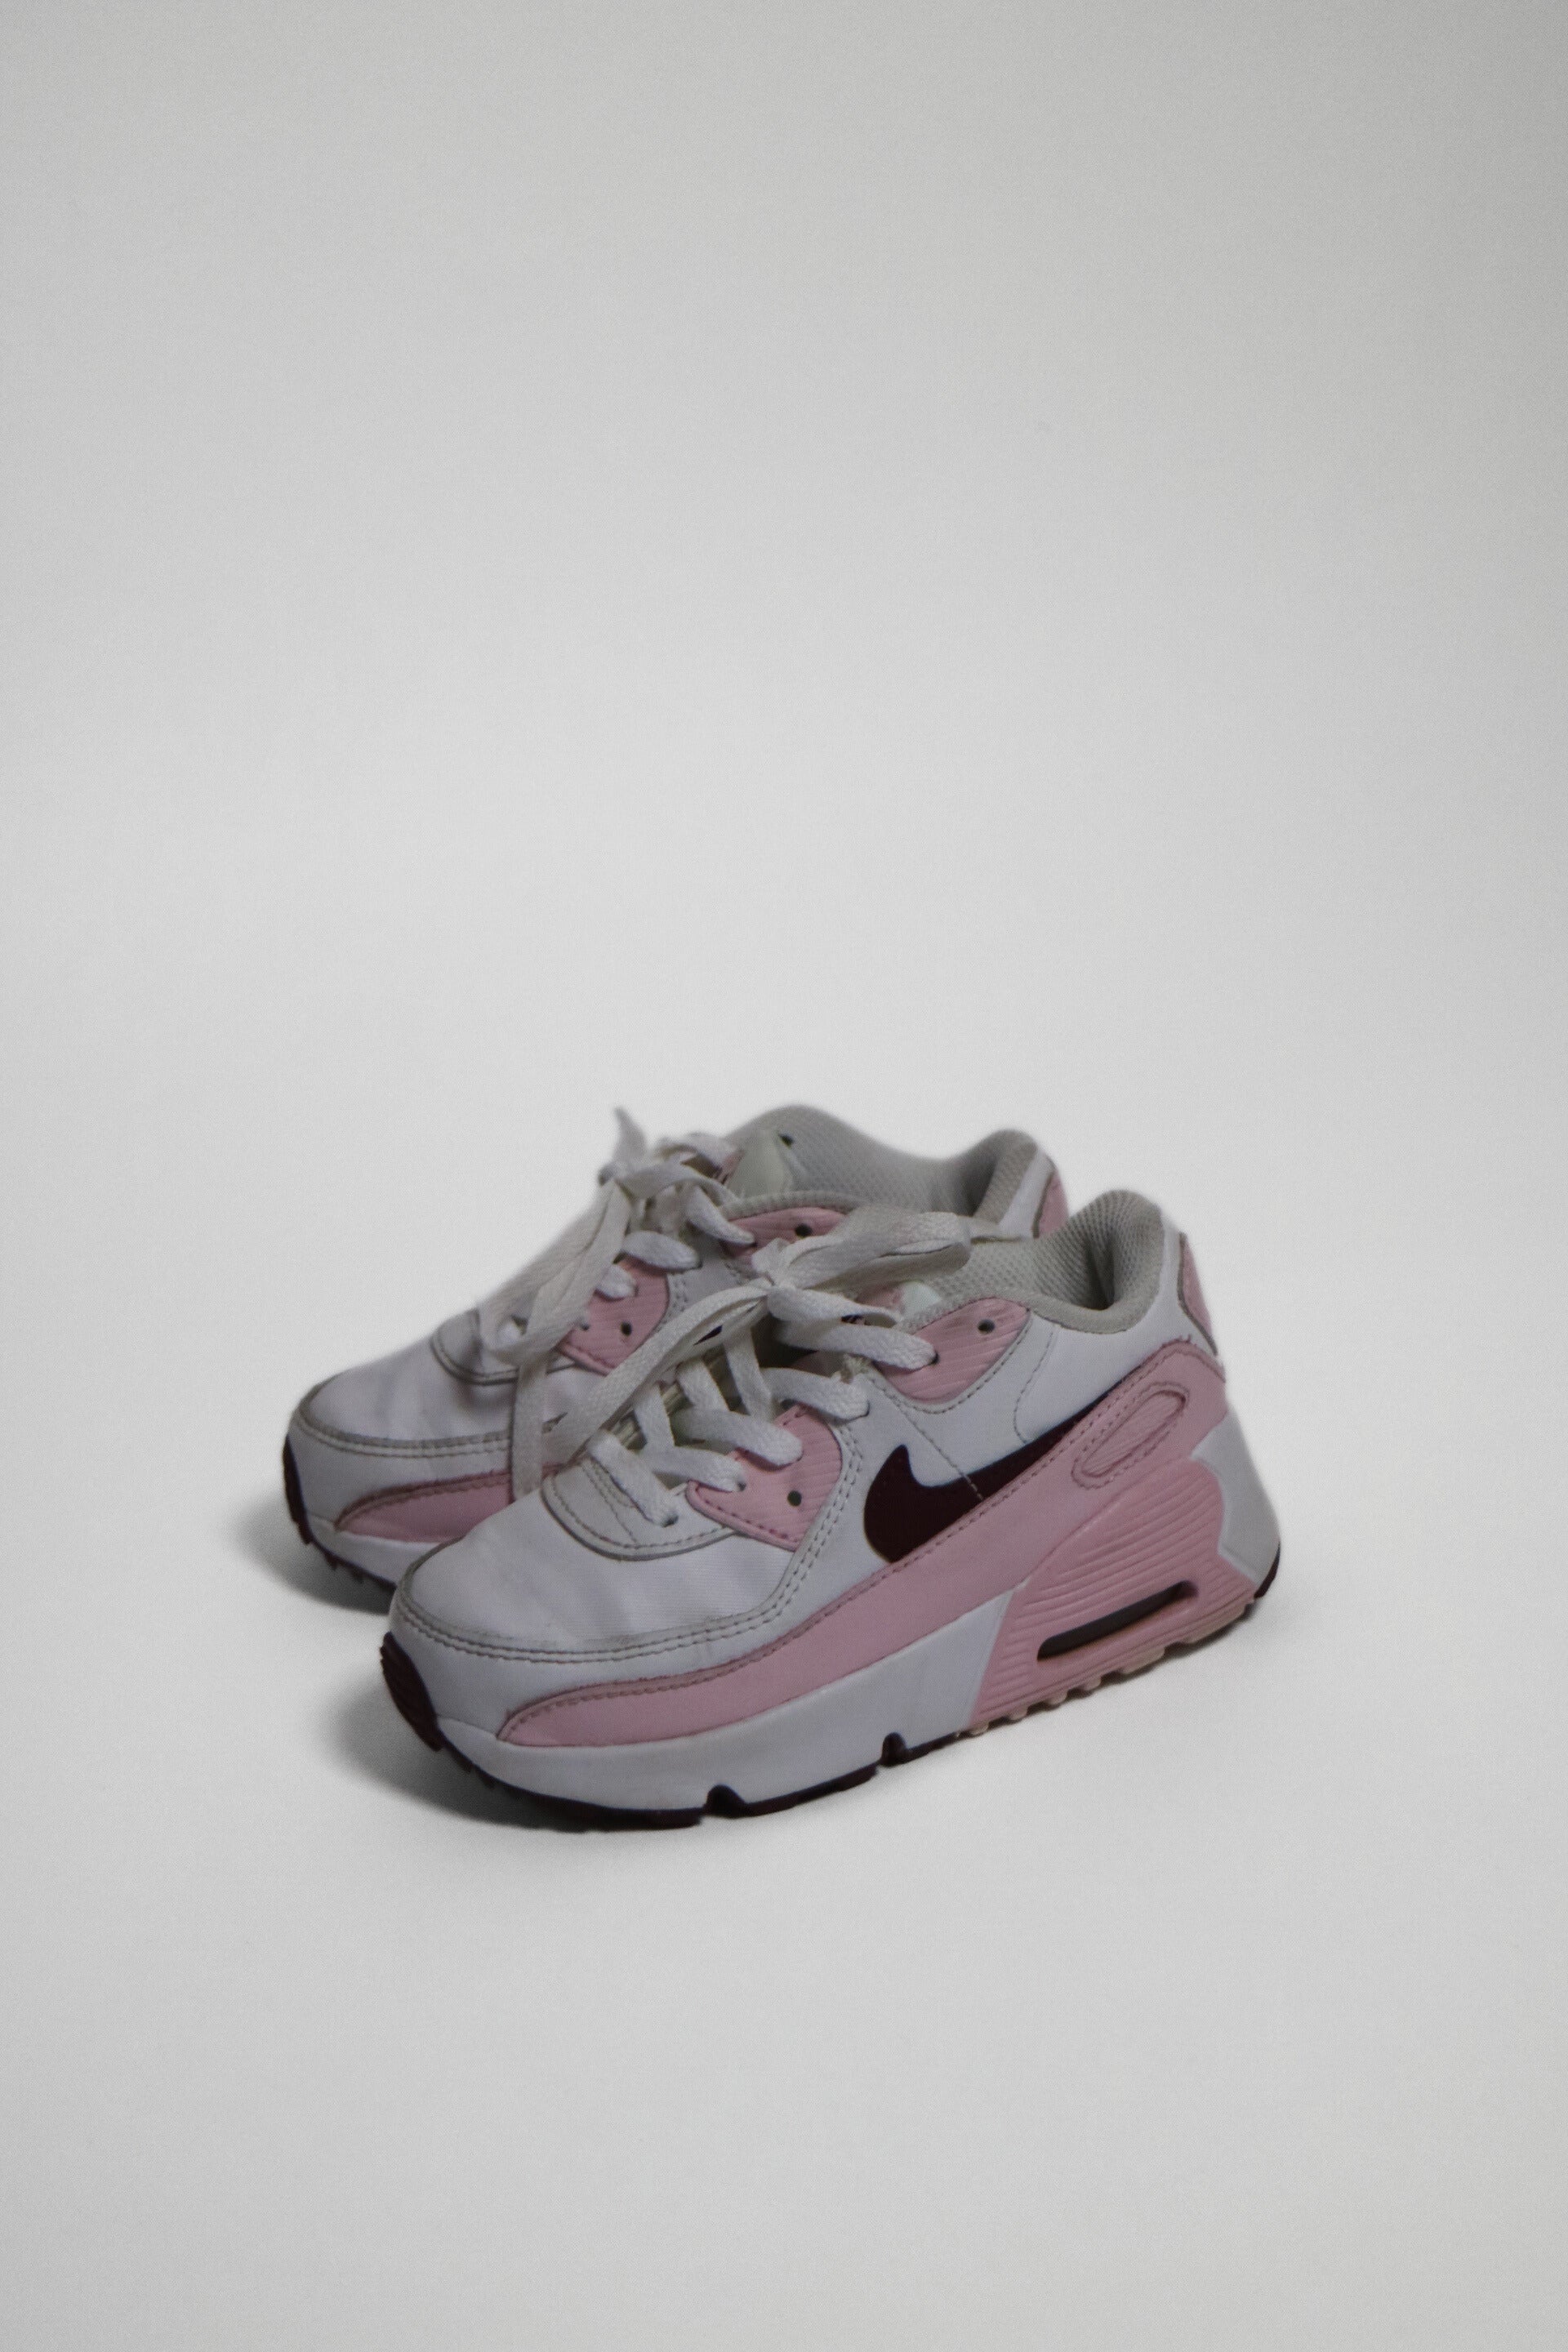 Vita och rosa sneakers från Nike med lila detaljer. Av modell Nike Air Max.